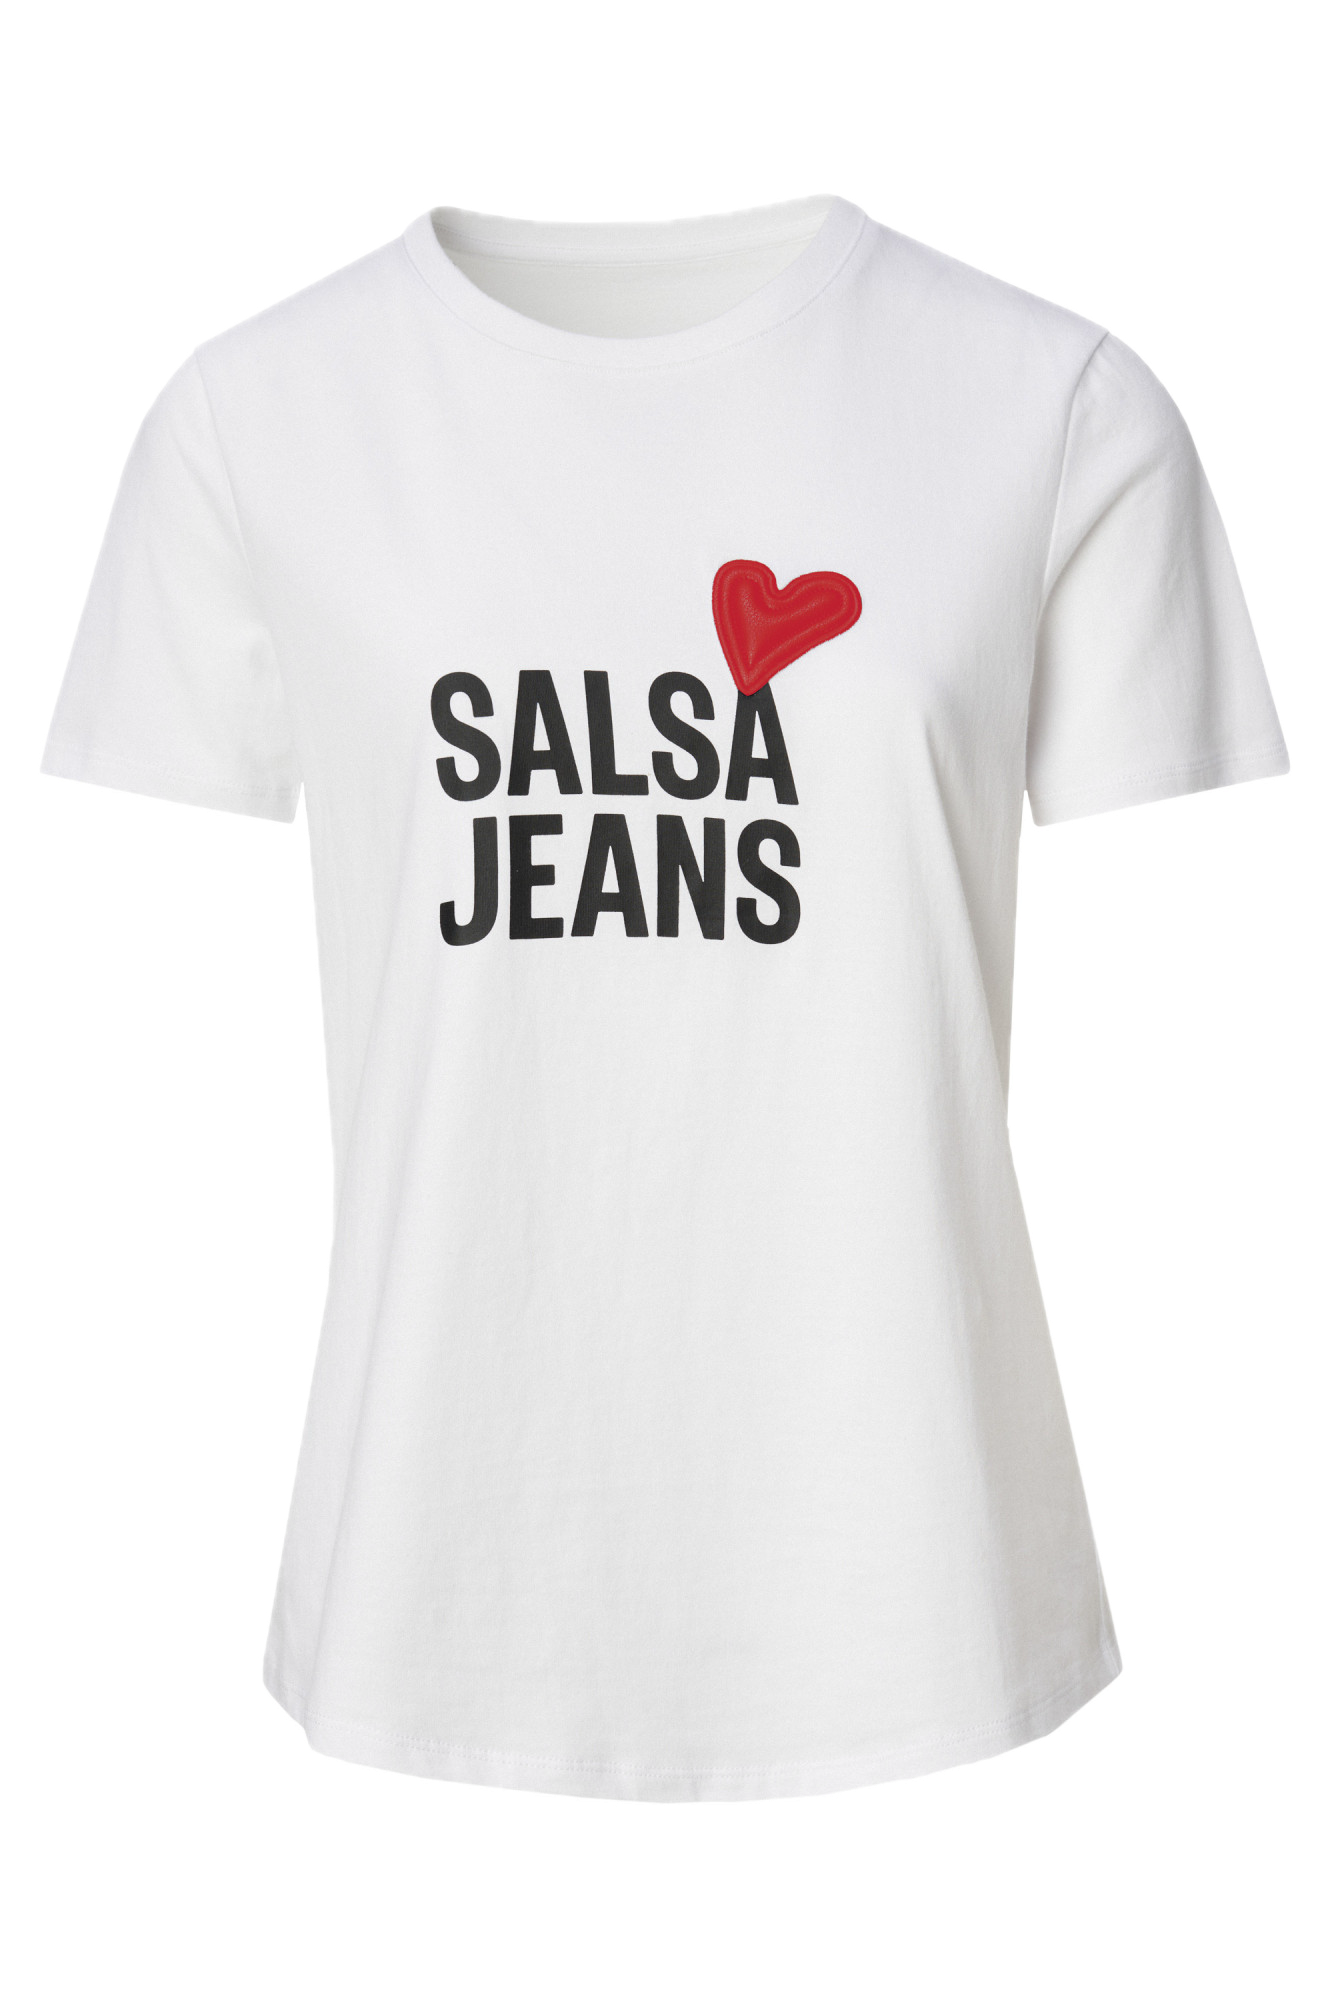 Camiseta Salsa Jeans con Branding y Detalle de Corazón